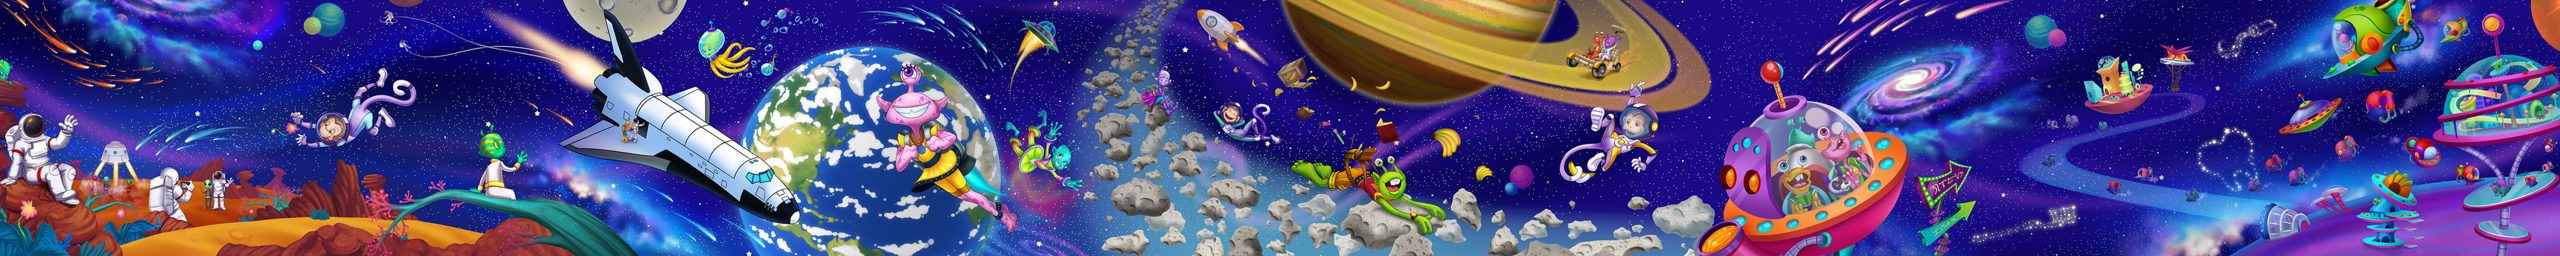 KidsMural-Space1